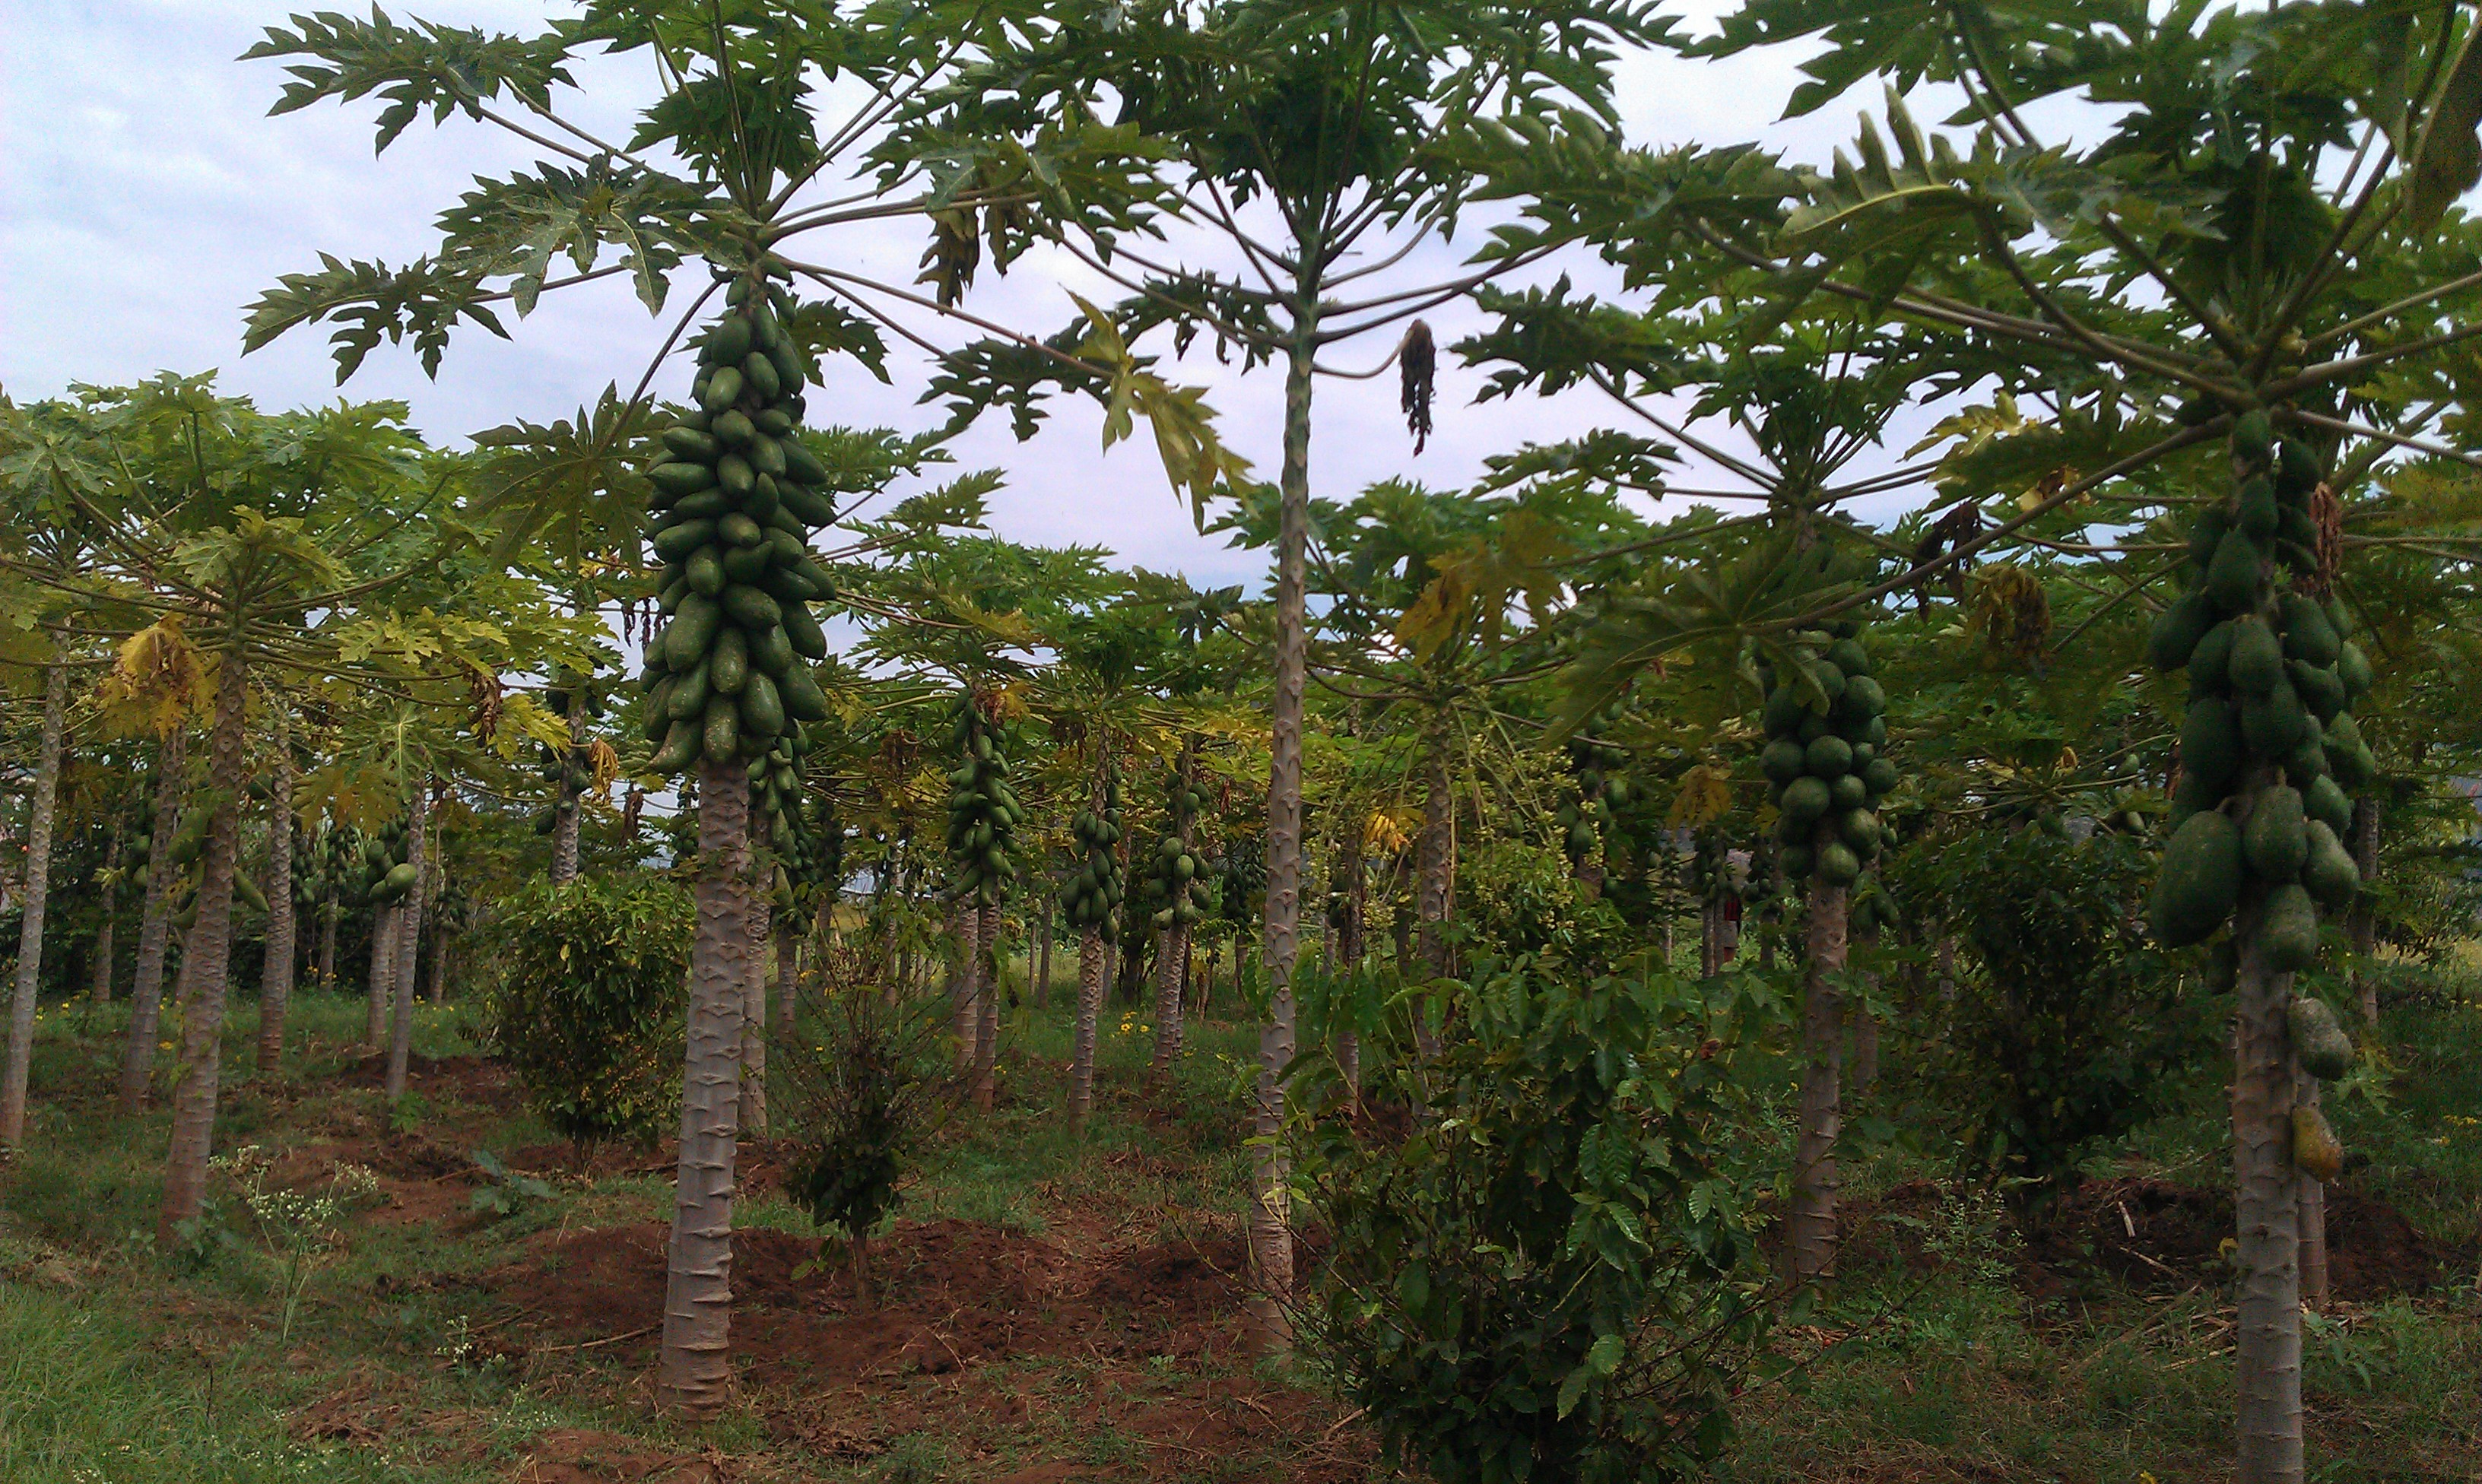 Papaya production at Ms. Fatiya Mohamed's farm